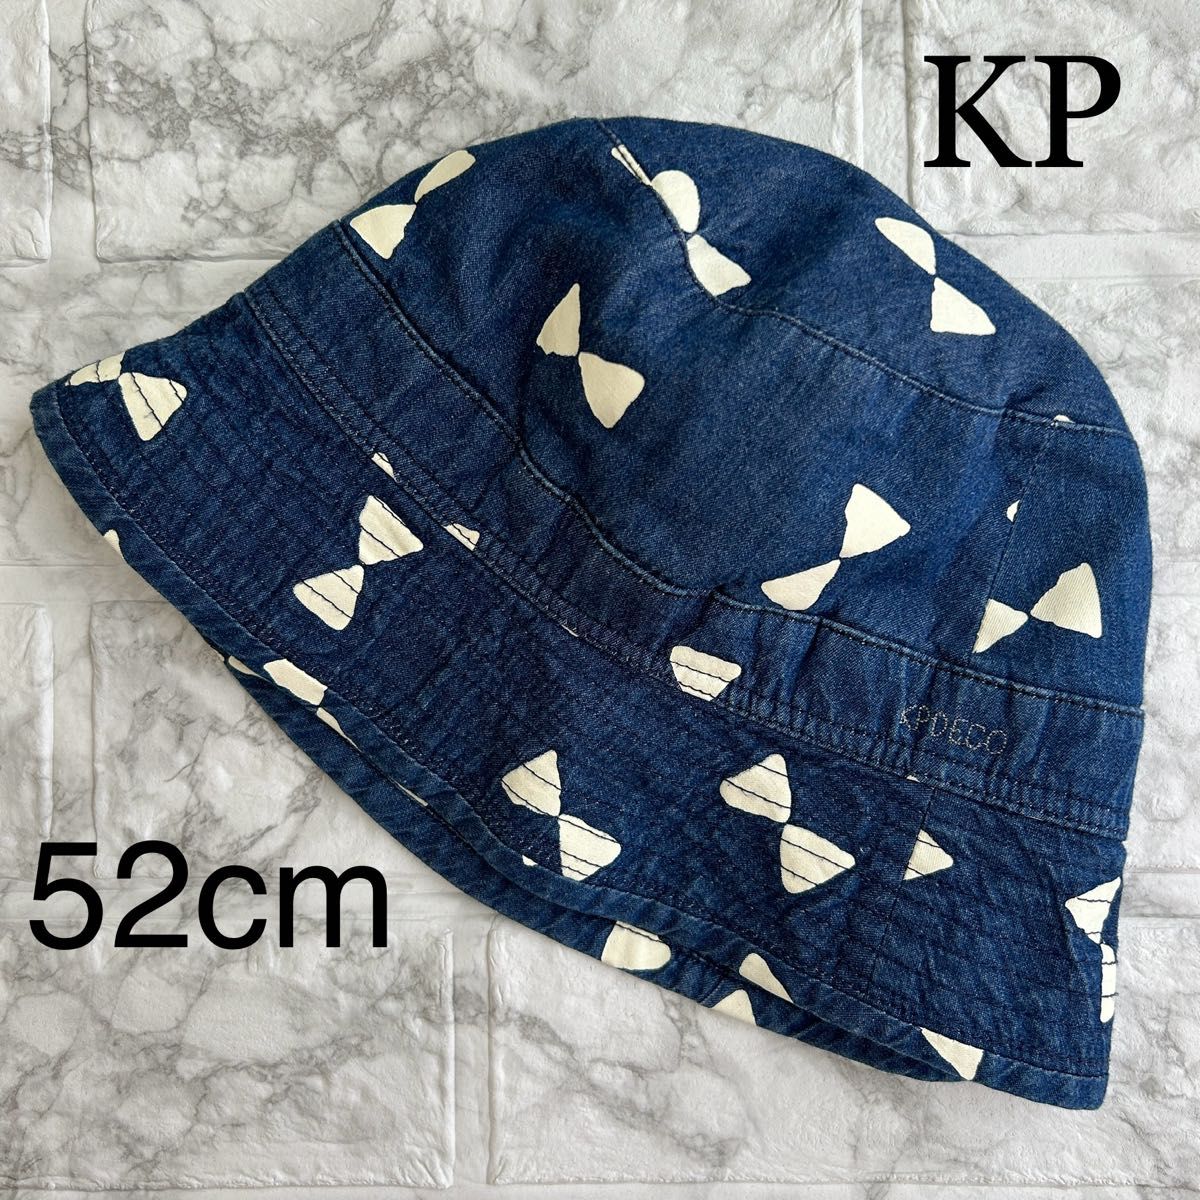 KP DECO ニットプランナー デニム リボン柄 ハット 帽子 52cm